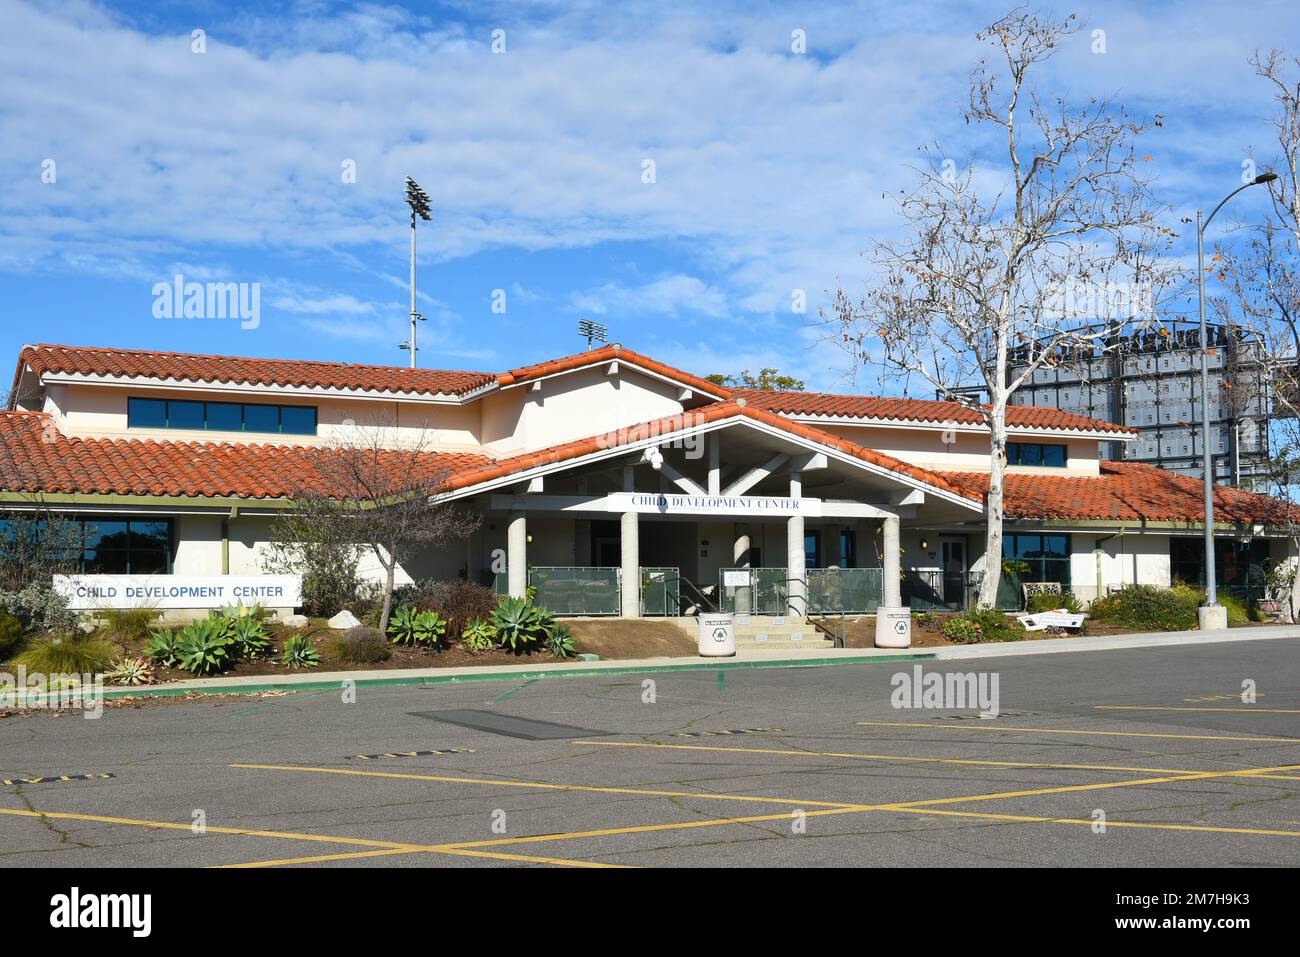 MISSION VIEJO, KALIFORNIEN - 8. JANUAR 2023: Das Child Development Center auf dem Campus des Saddleback College. Stockfoto